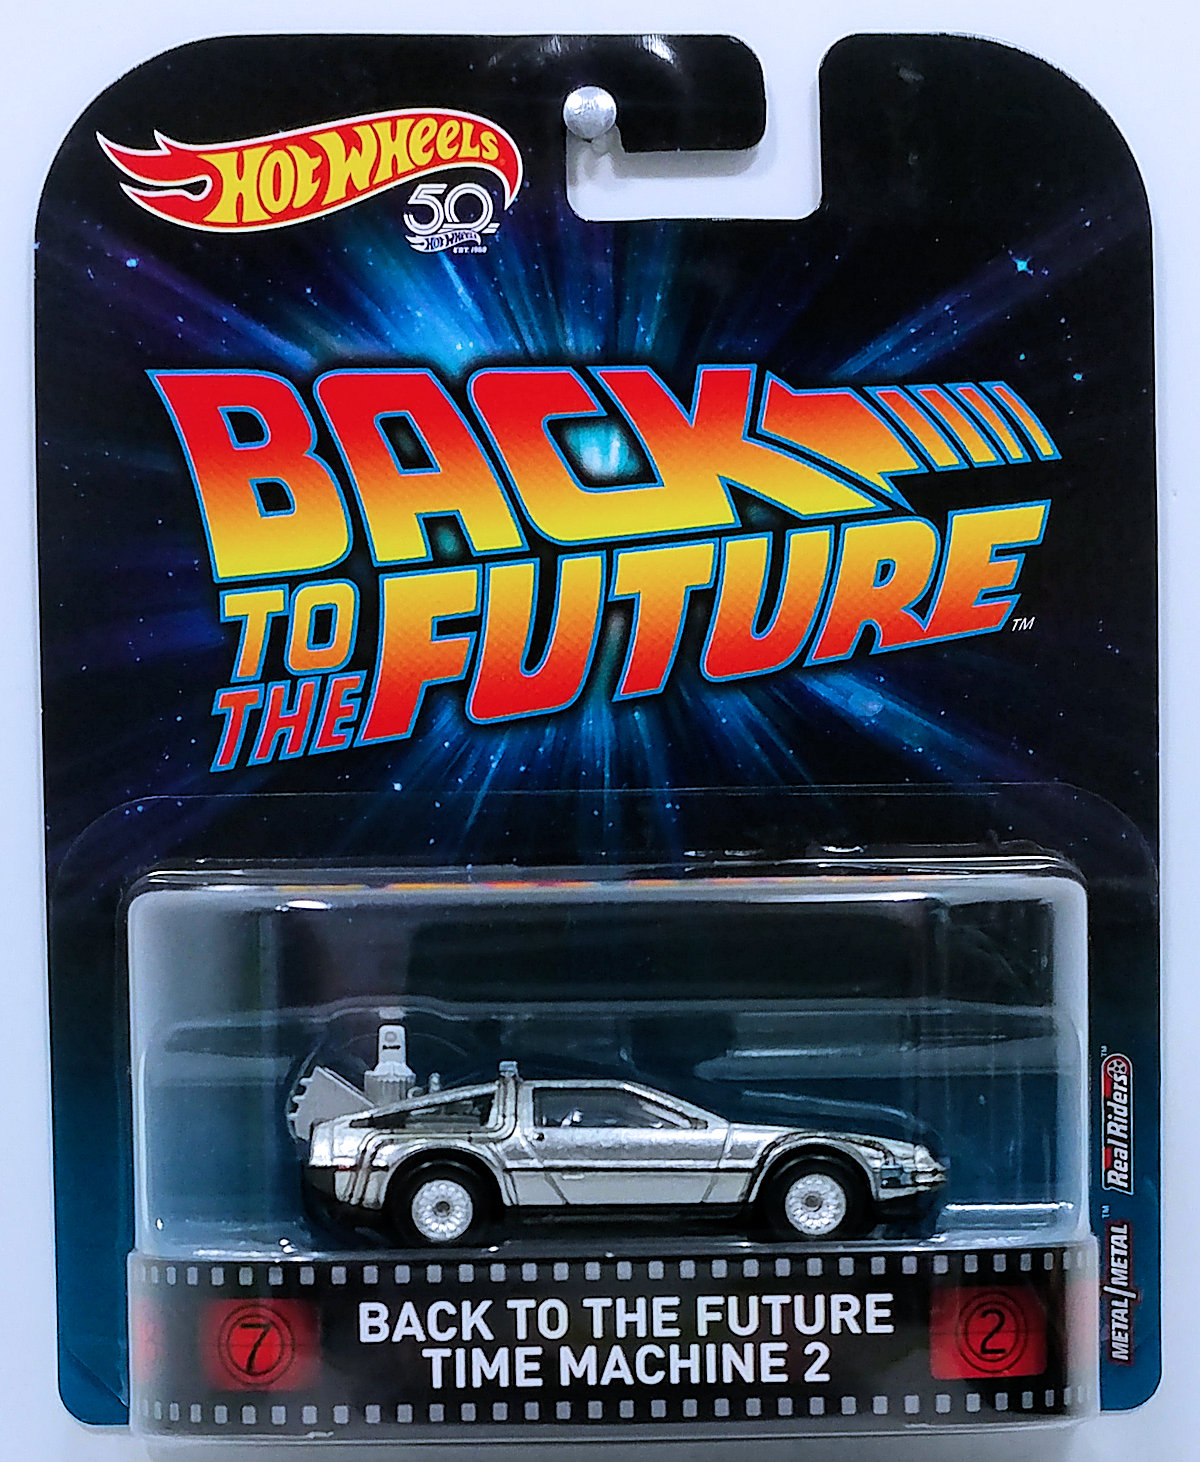 DeLorean Time Machine 2 Zurück in die Zukunft Retro 1:64 Hot Wheels FLD13 DMC55 